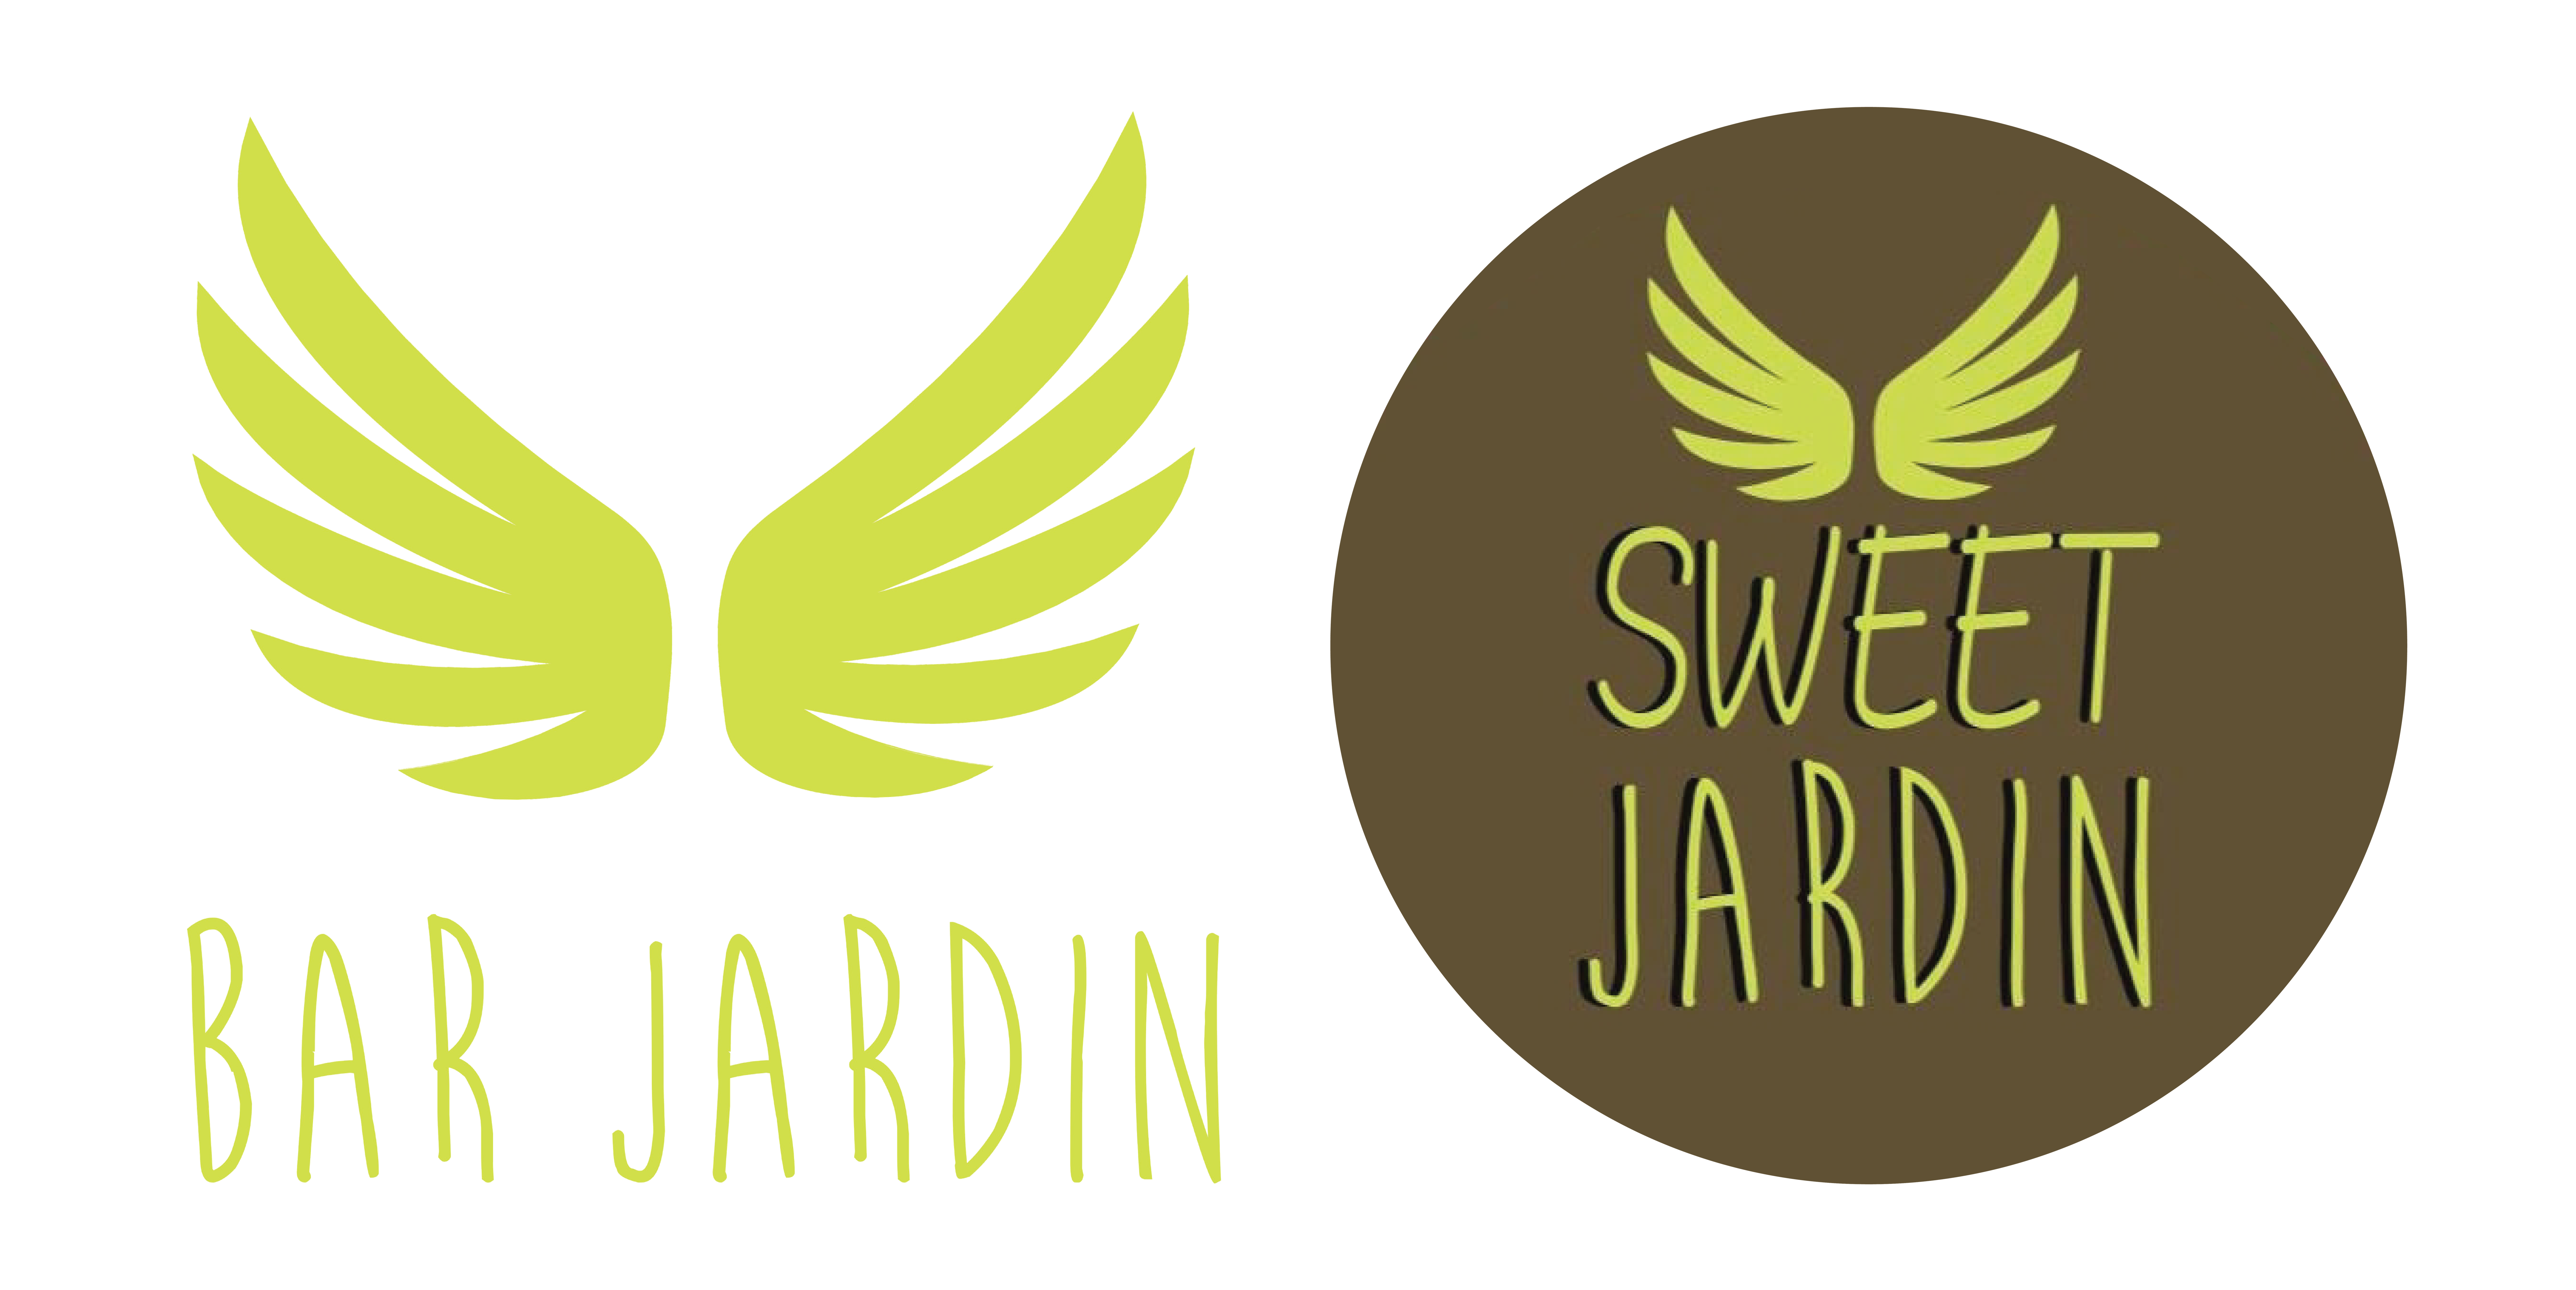 Logo BAR JARDIN • SWEET JARDIN